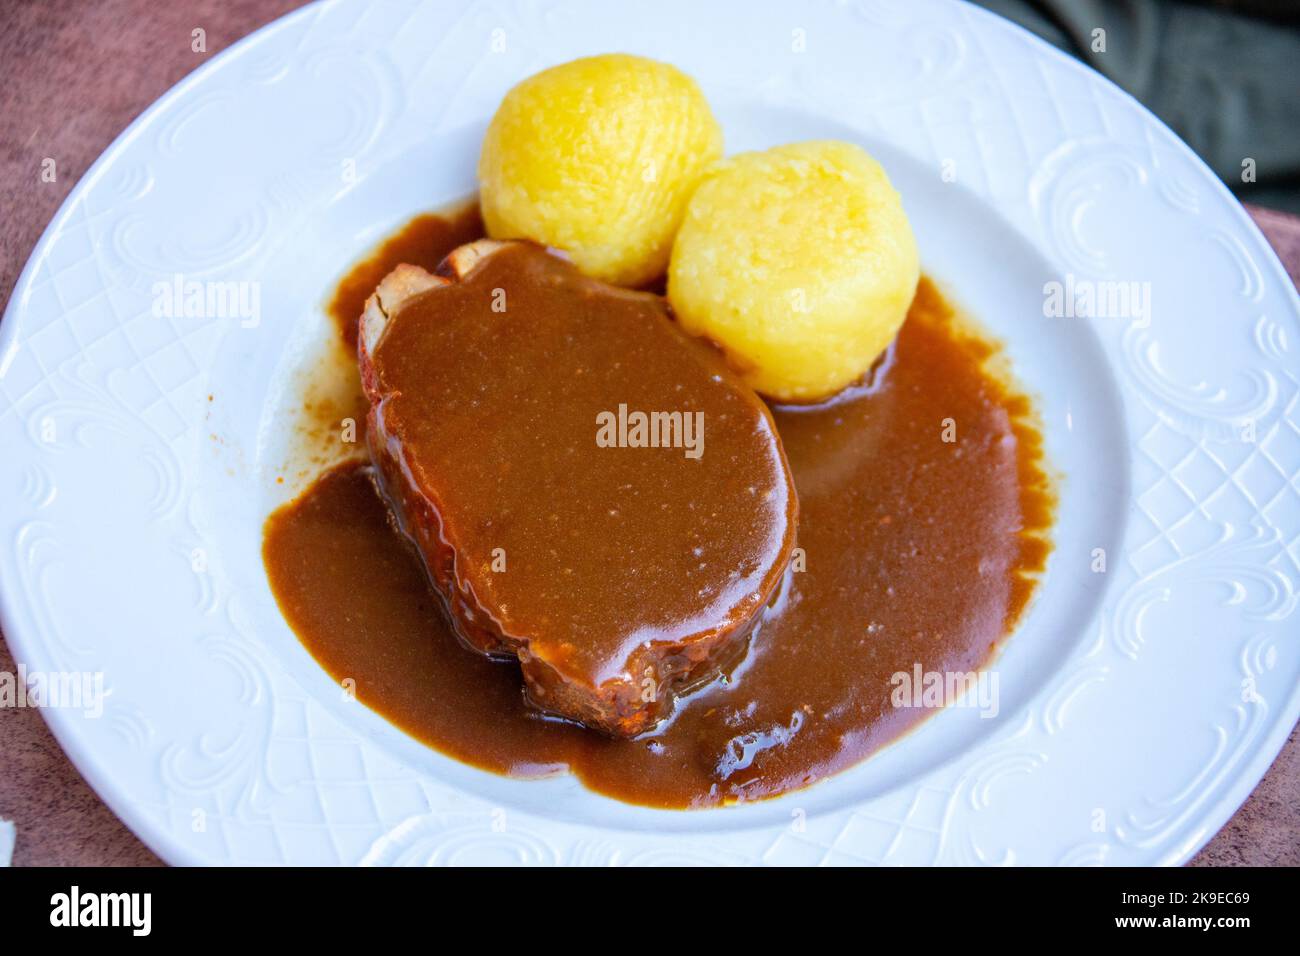 Rôti en pot avec sauce au bœuf et boulettes de pommes de terre, Brauhaus Kloster Machern, Bernkastel-Kues, Allemagne Banque D'Images